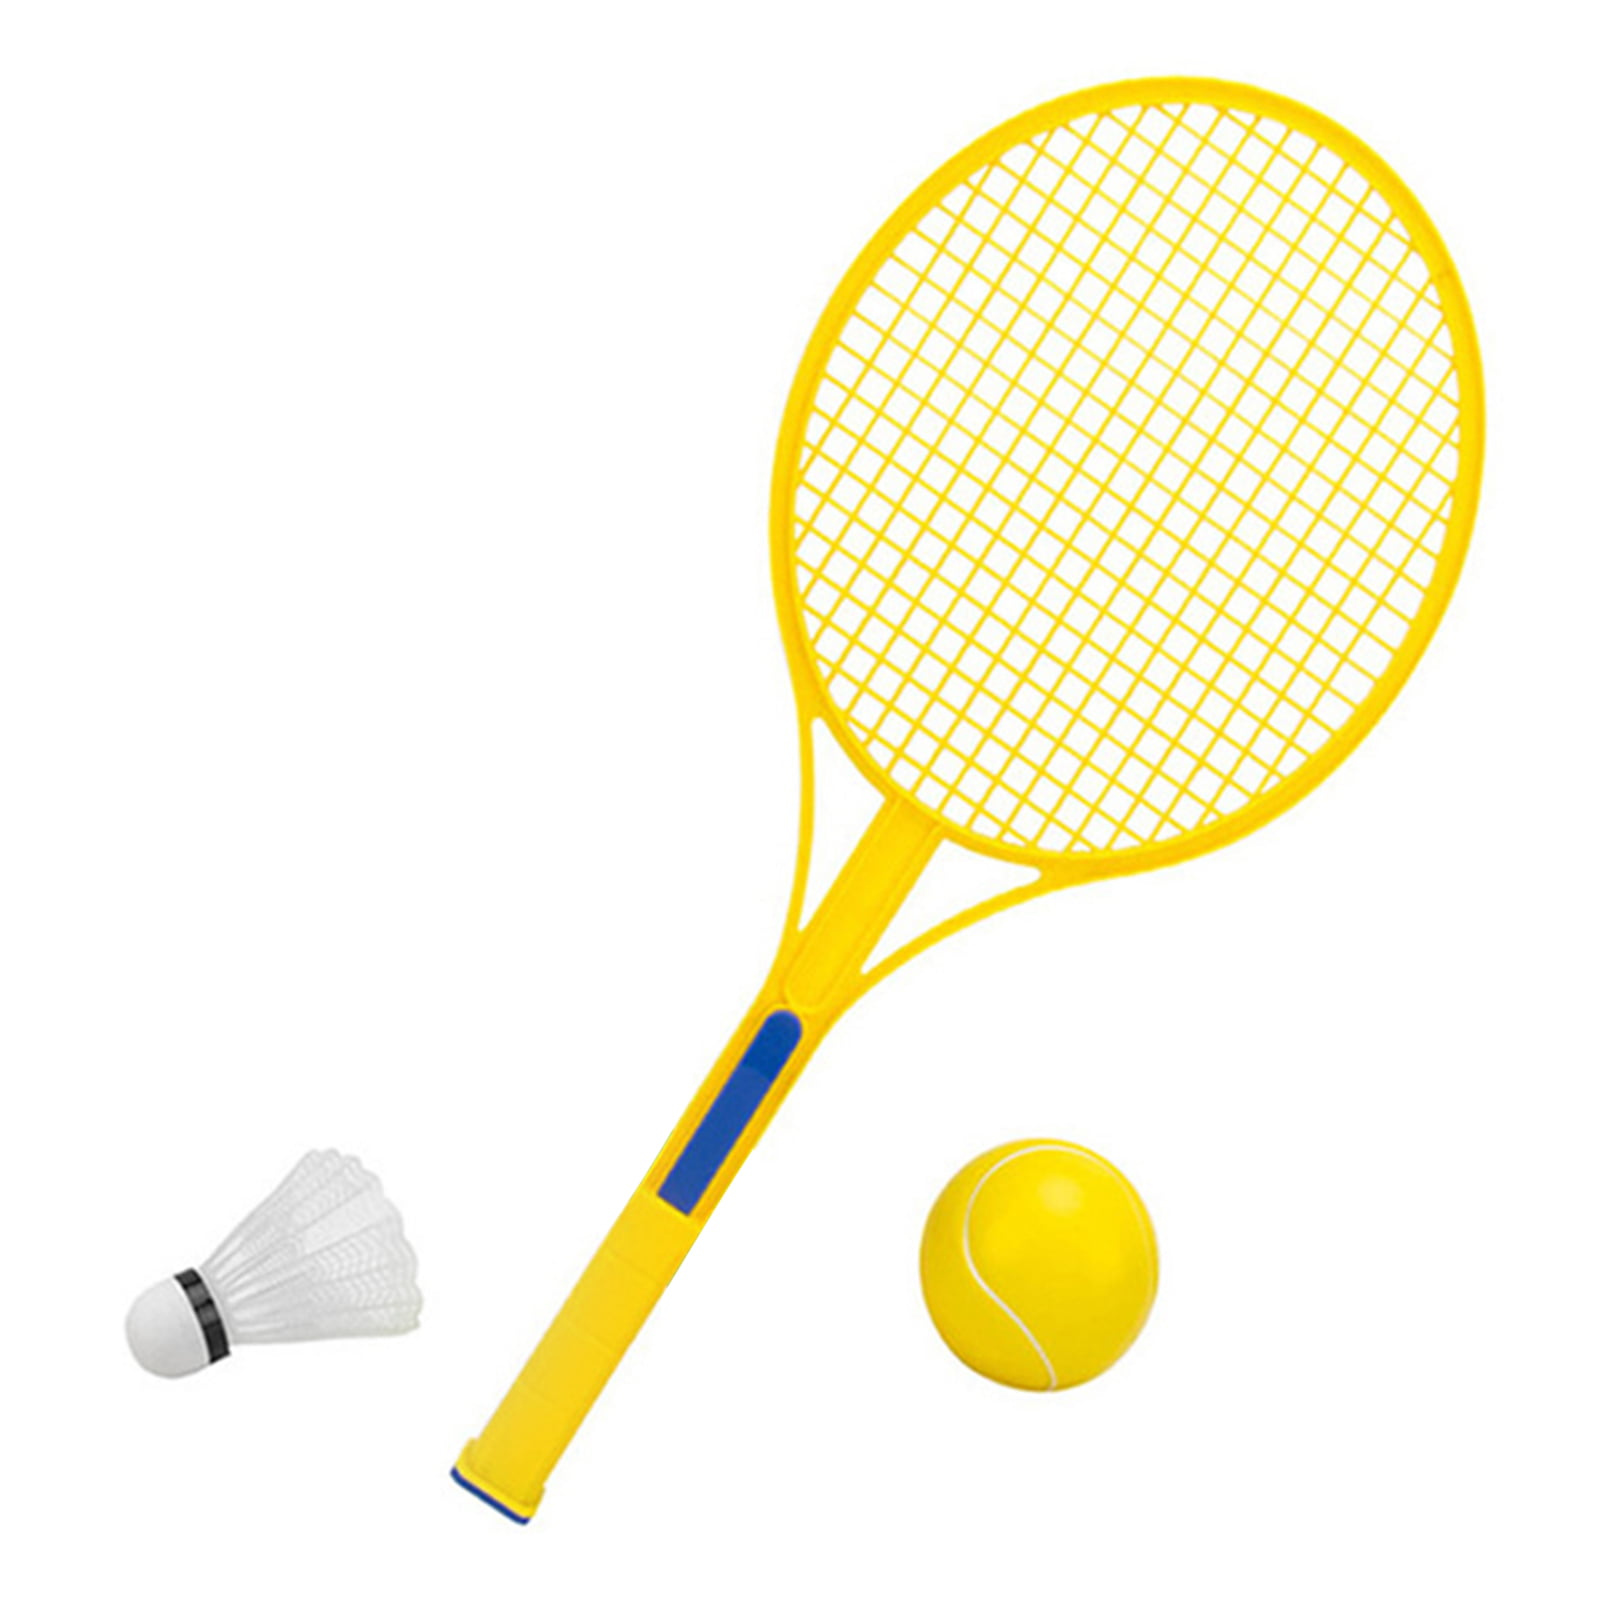 Details about   REGAIL Kids Tennis Racket Ball Set Child Outdoor Sport Game Tennis Racquet w/Bag 